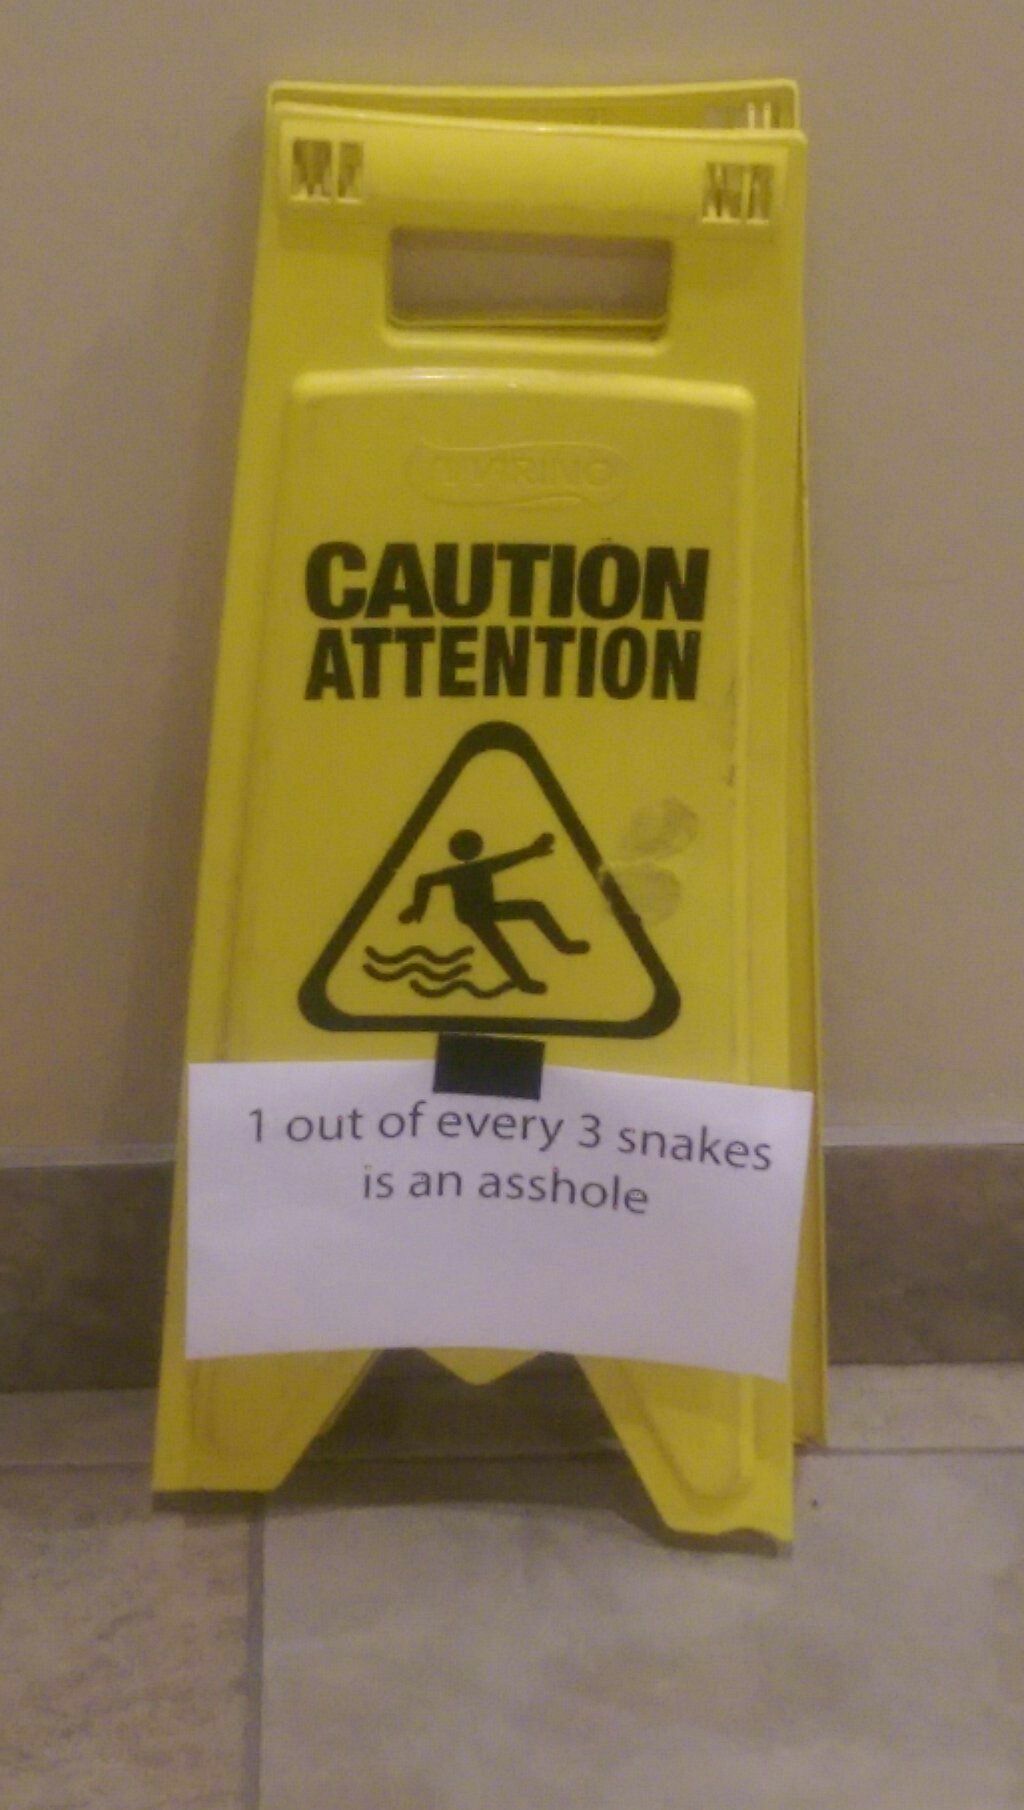 All snakes aren't evil